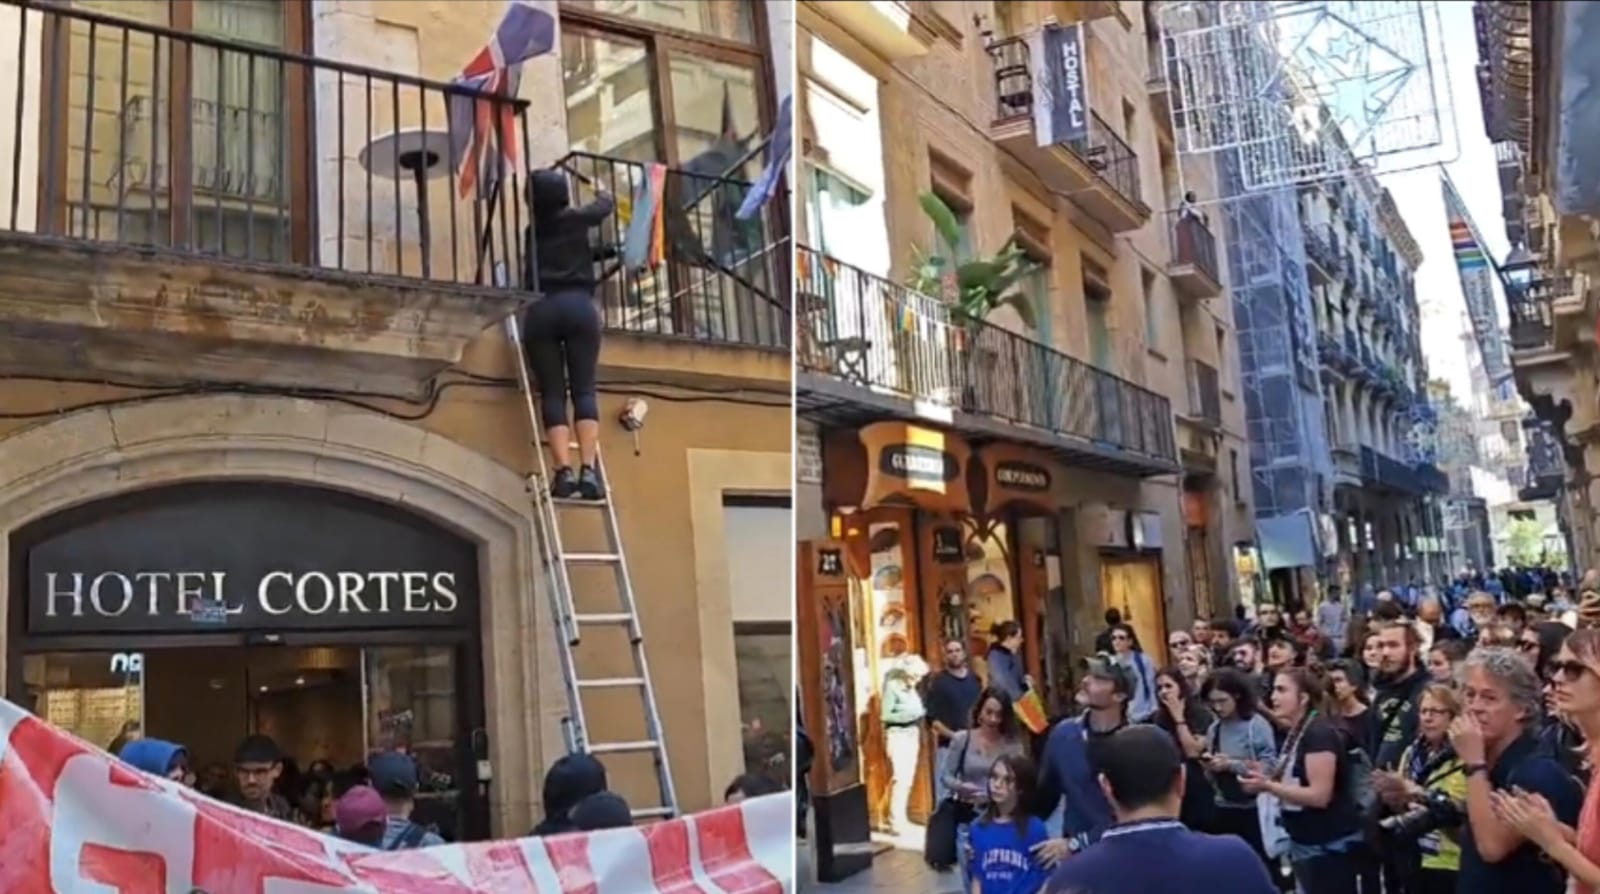 Hotel de judeu é invadido durante protesto anti-Israel na Espanha